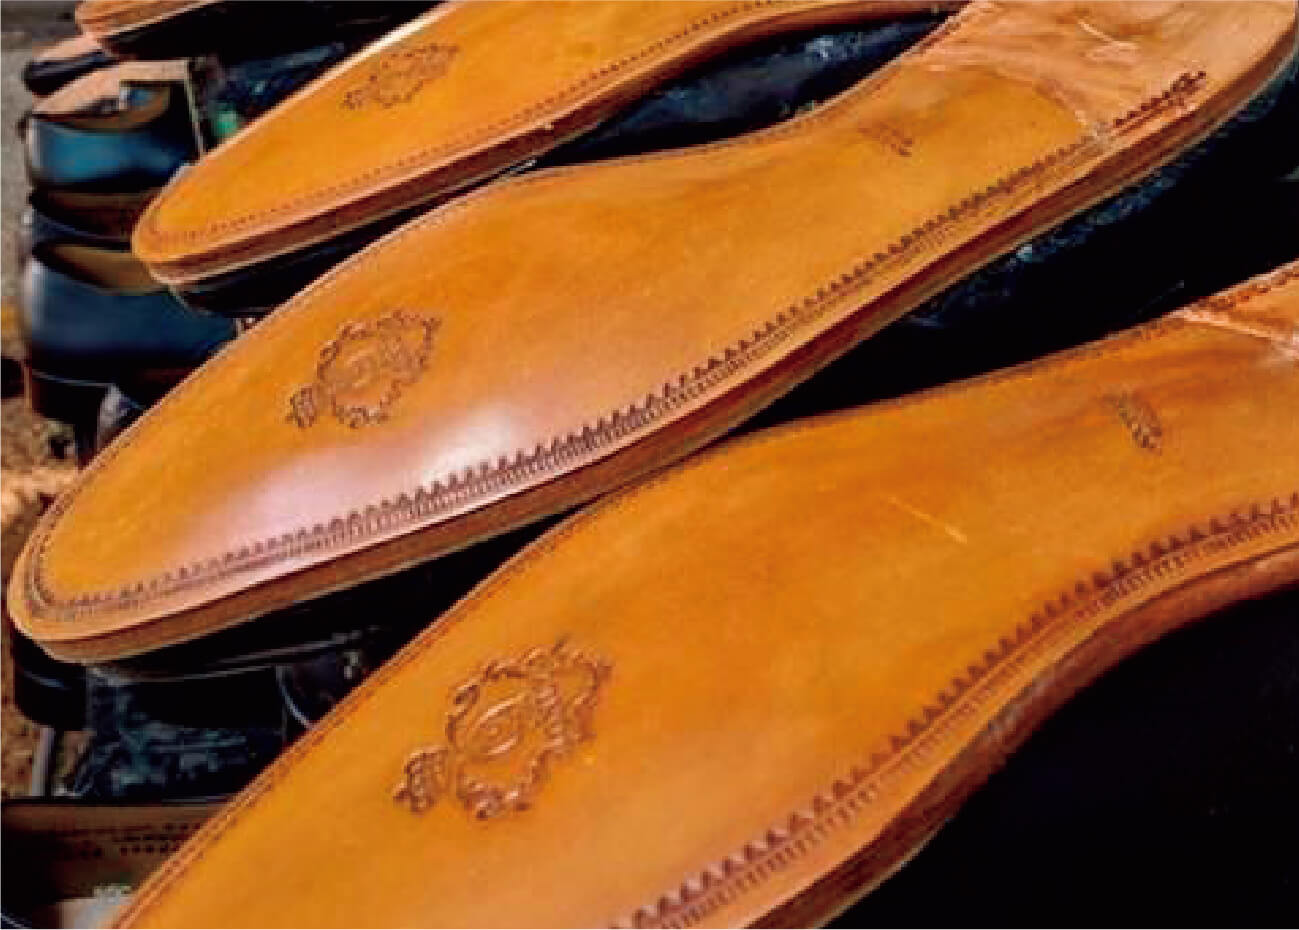 「グッドイヤーウェルト製法」とは、印革と靴底を「ウェルト」と呼ばれる革の帯でつなぎ合わせる製靴技法です。